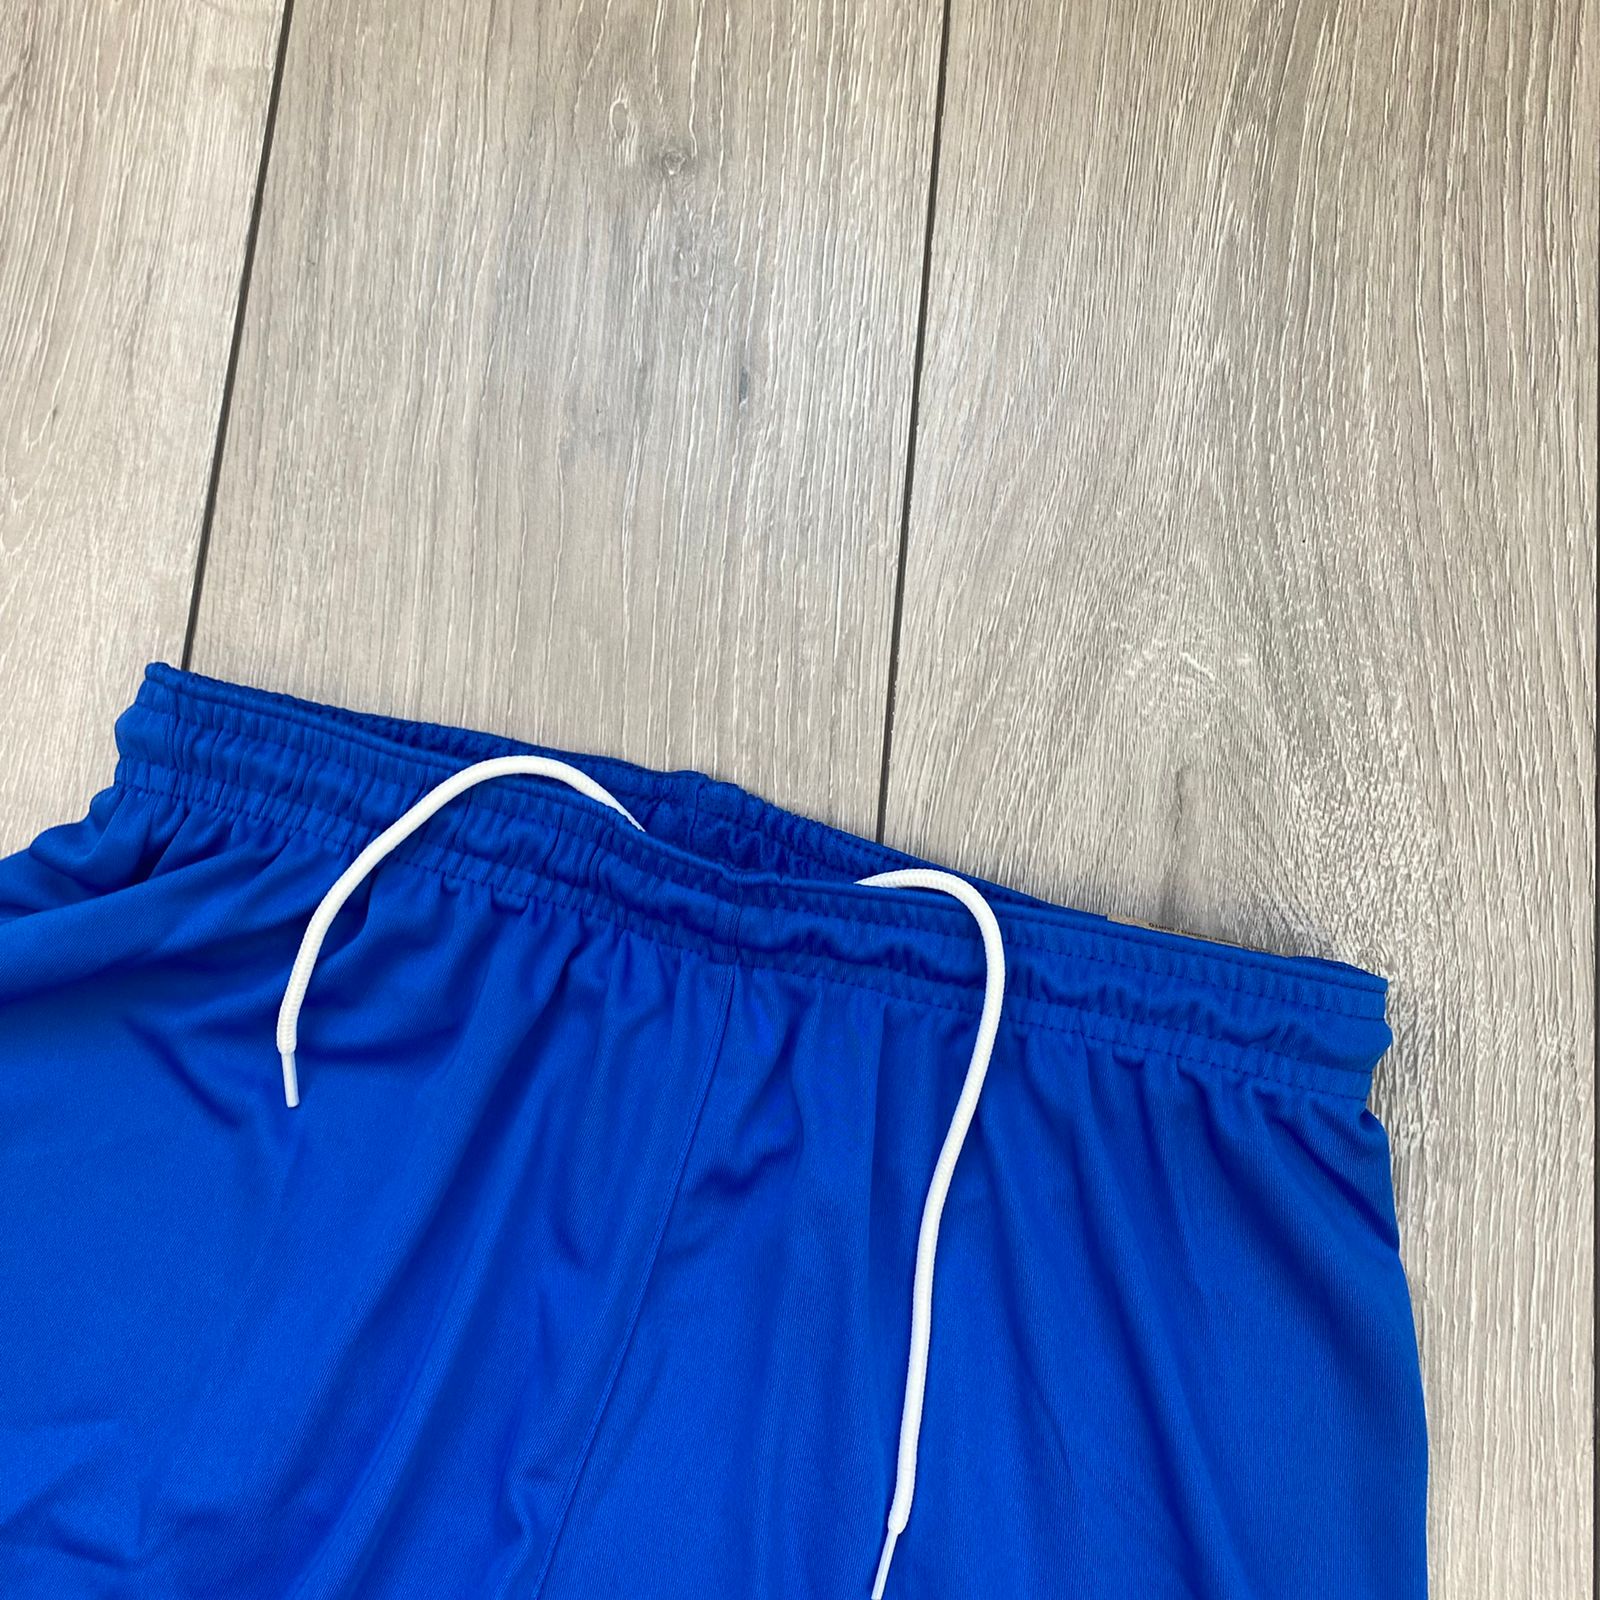 Nike Dri-Fit Shorts - Blue